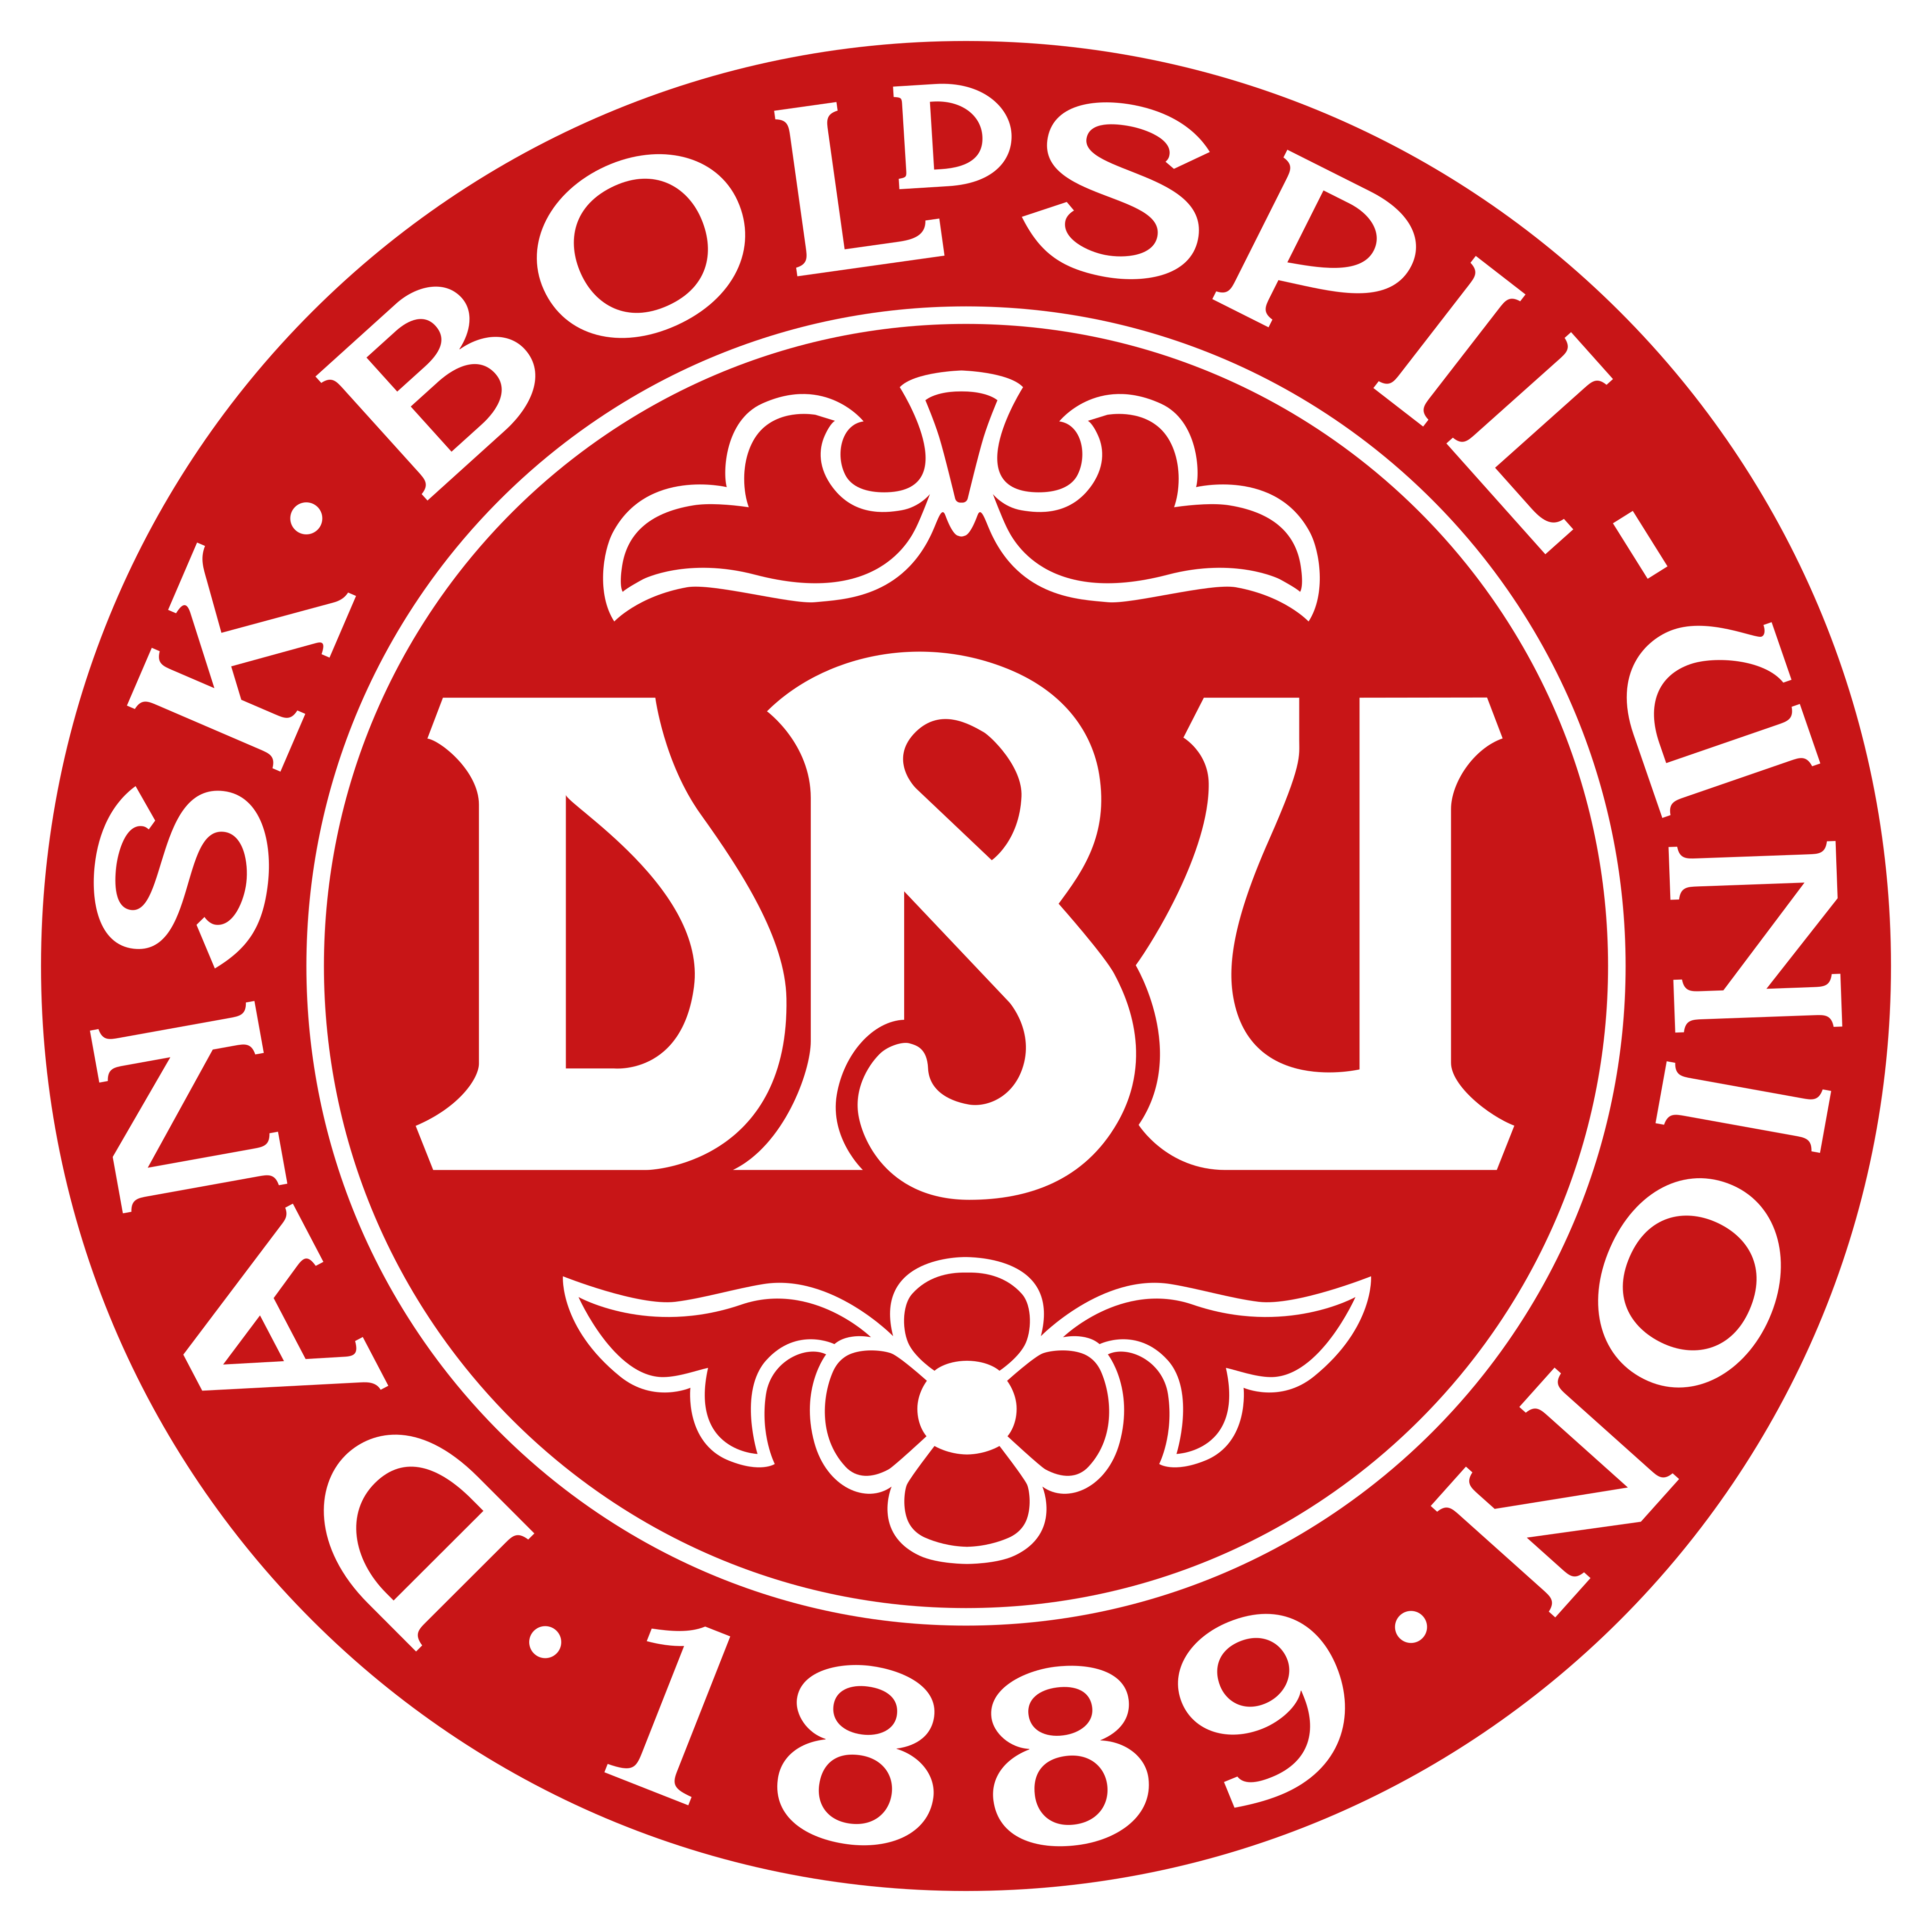 denmark national football team logo - Denmark National Football Team Logo